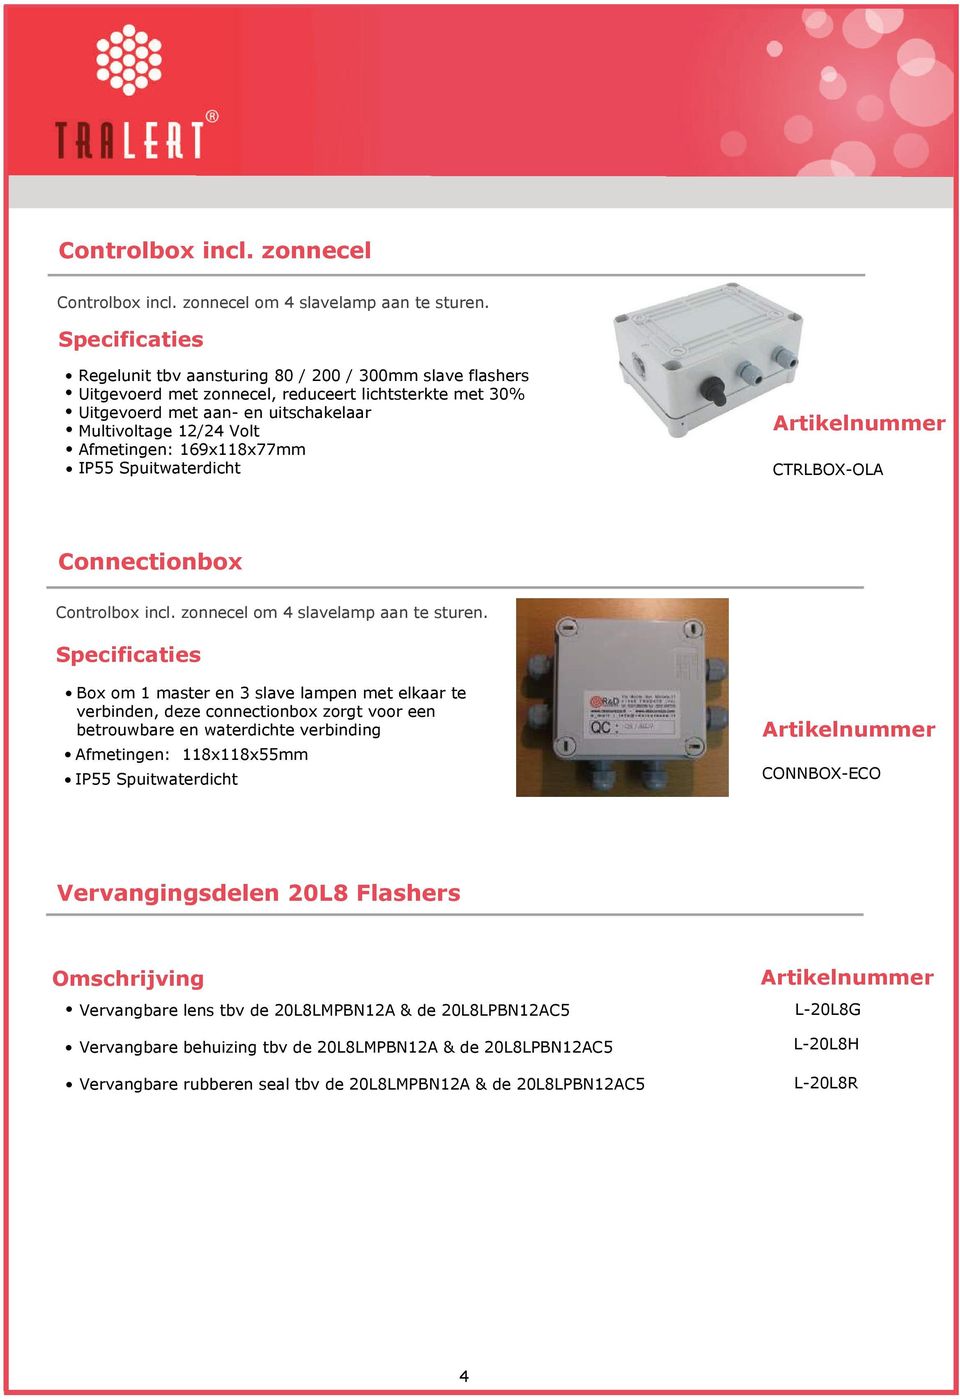 IP55 Spuitwaterdicht CTRLBOX-OLA Connectionbox Controlbox incl. zonnecel om 4 slavelamp aan te sturen.